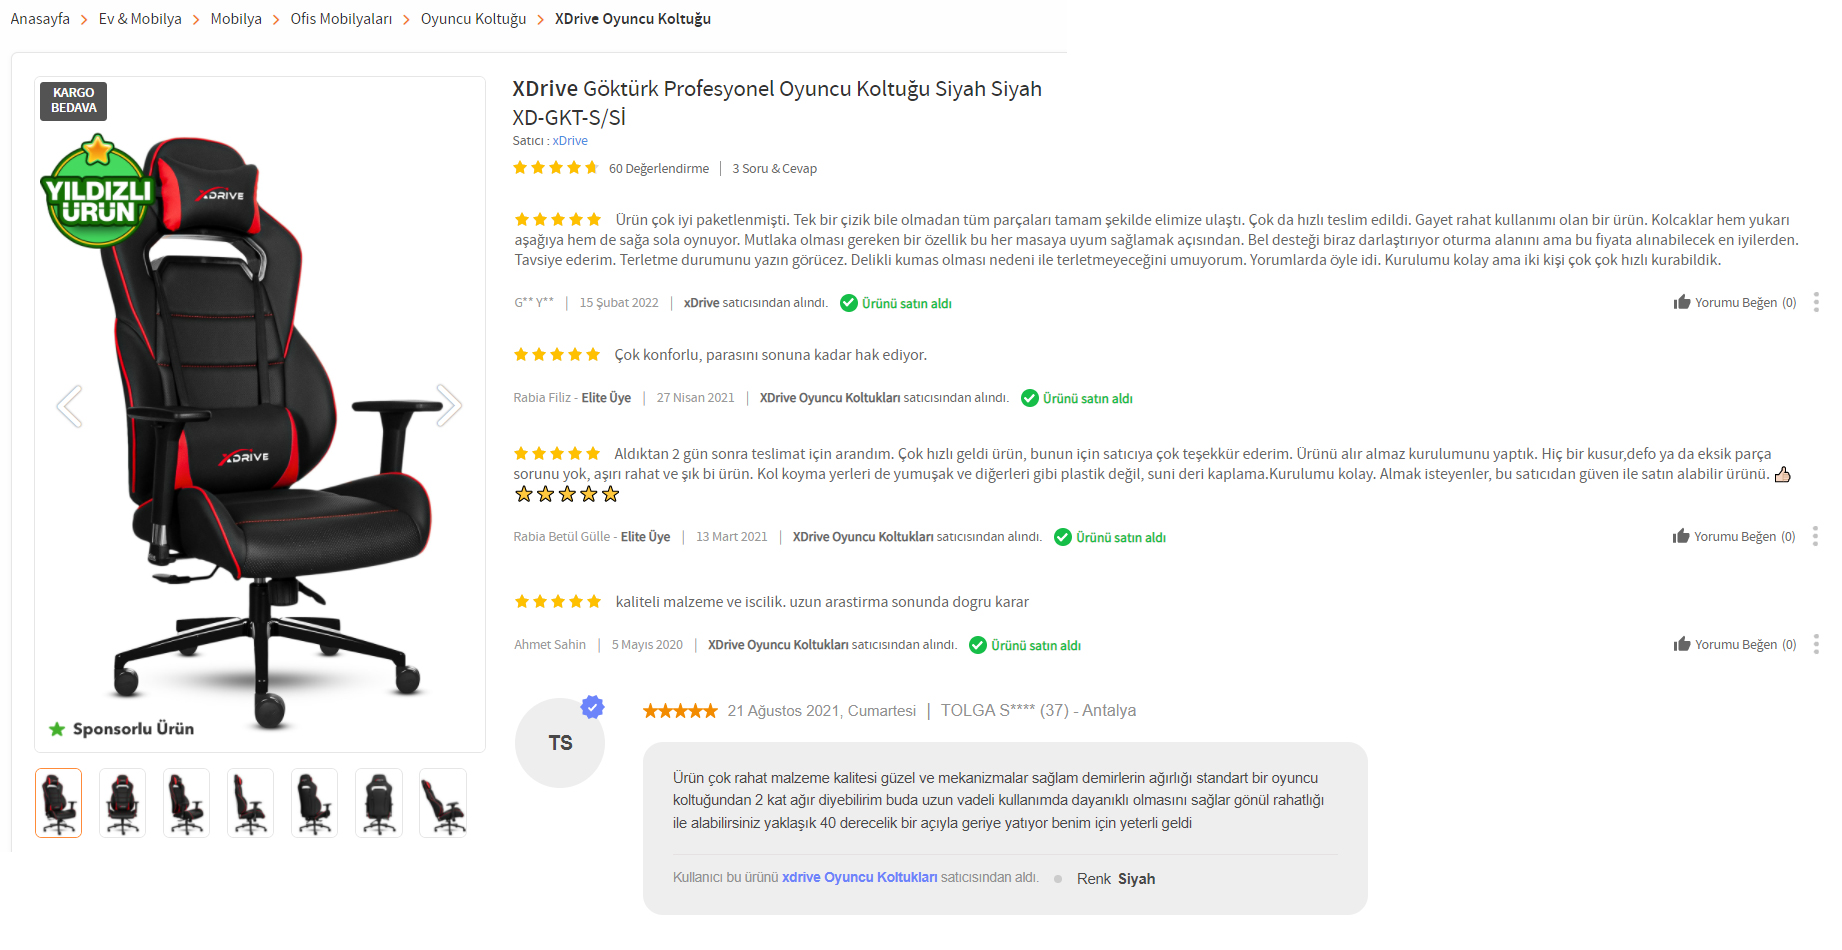 xDrive Göktürk Oyuncu Koltuğu Önerisi ve Kullanıcı Yorumları